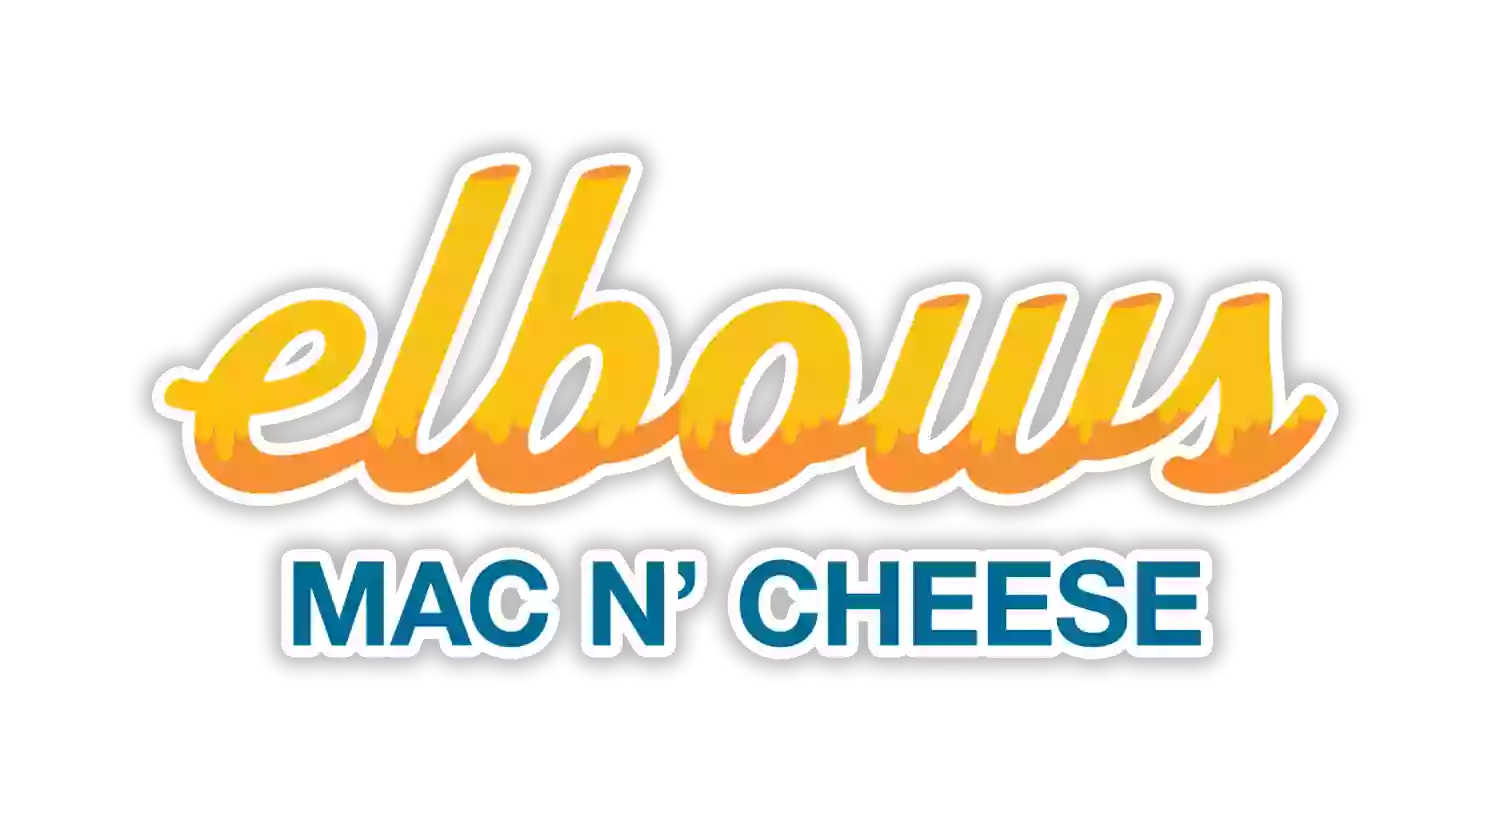 Elbows Mac N' Cheese Texas